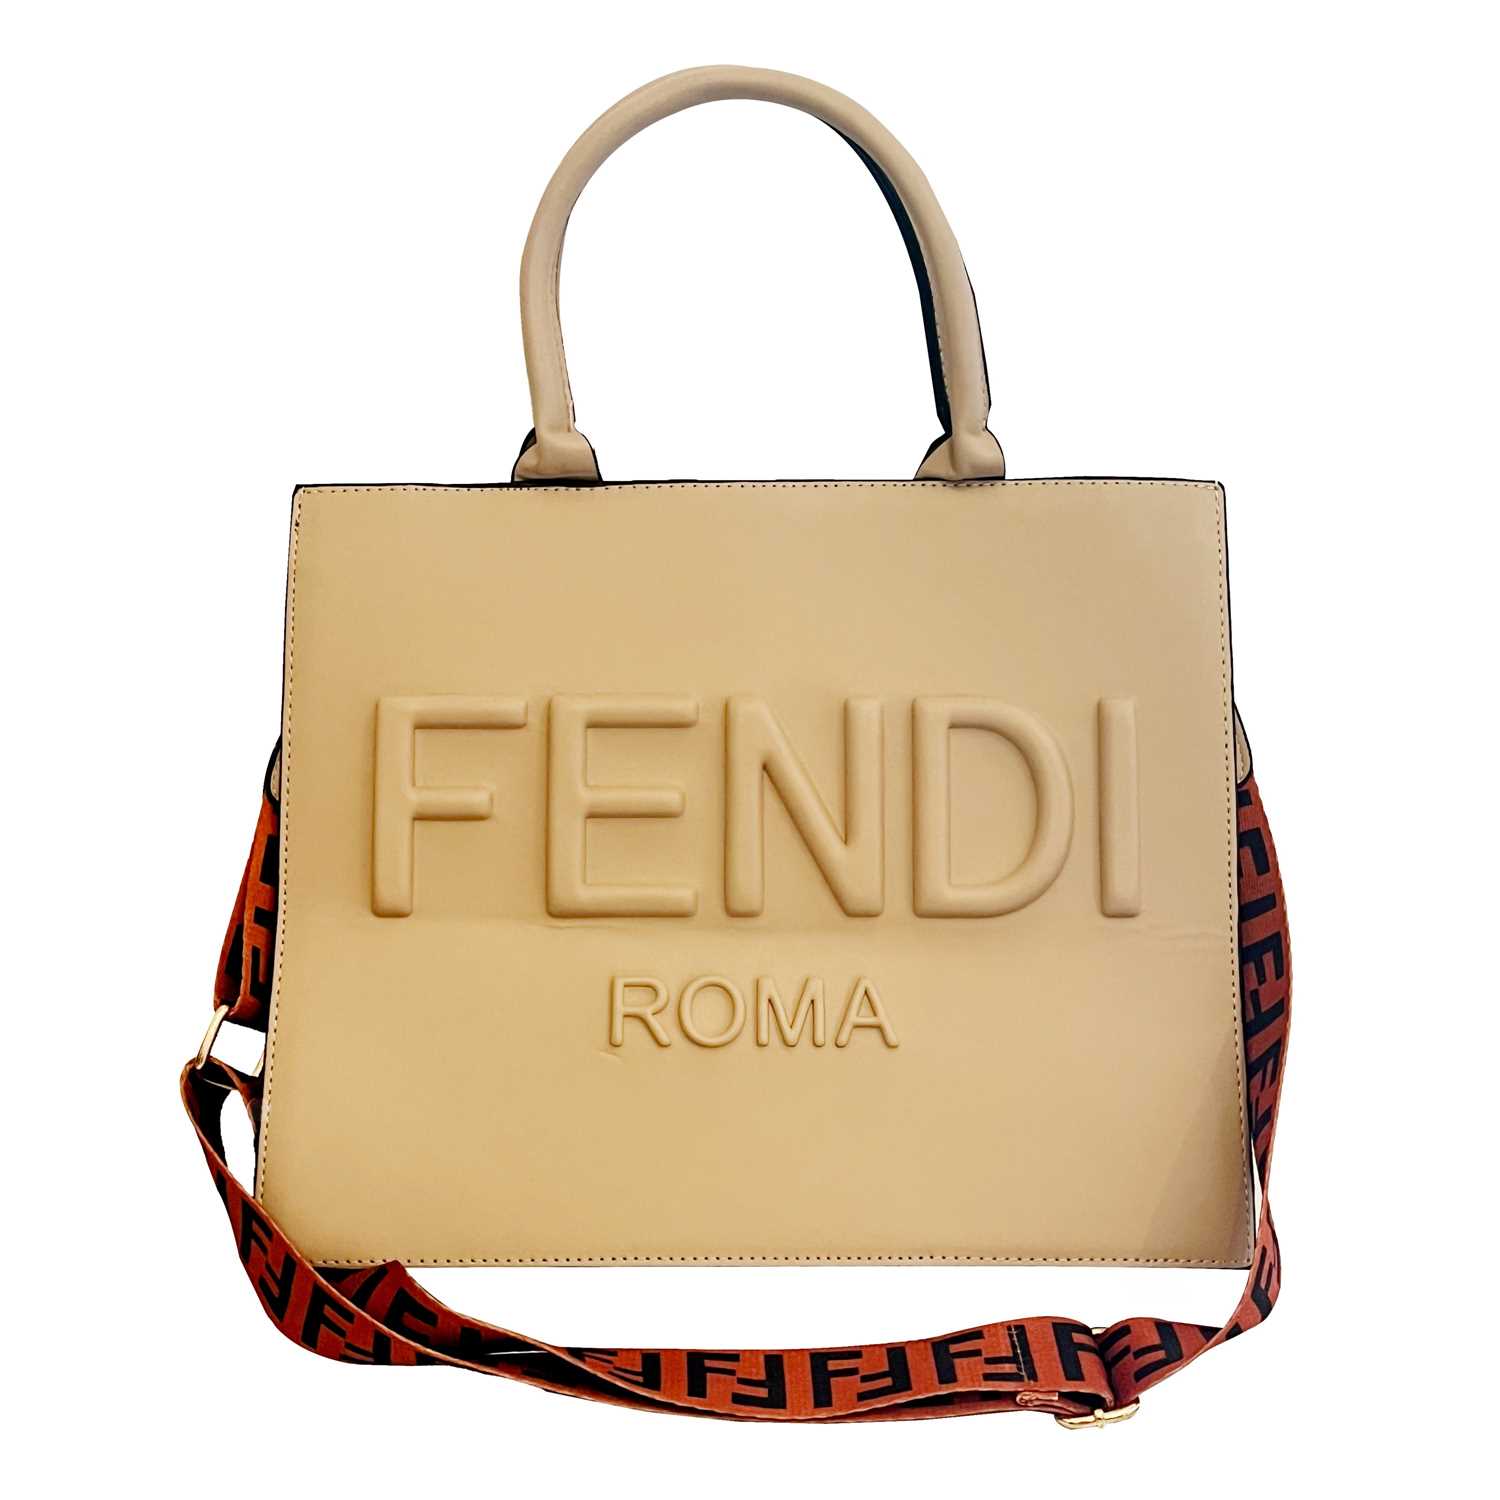 Lot 11 - A fendi handbag with shoulder strap.